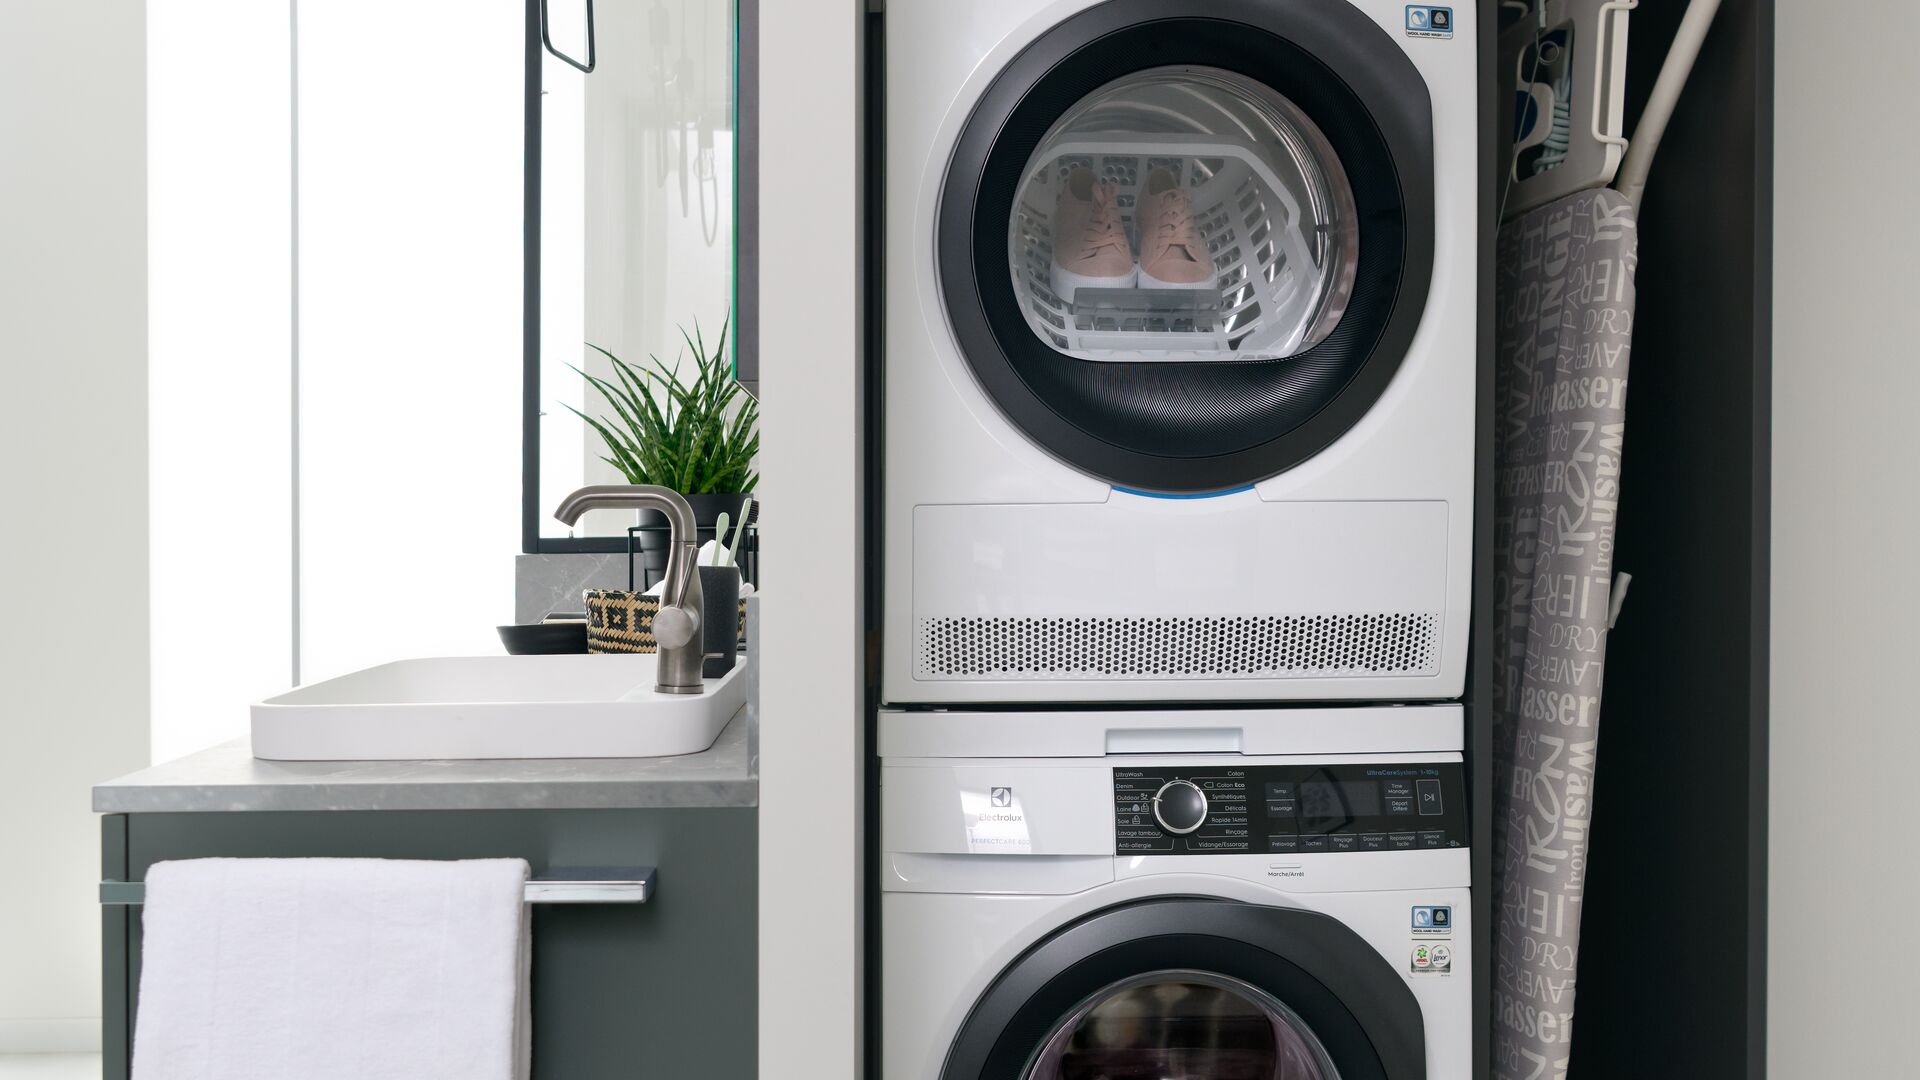 Schrank mit versteckter Waschkücheneinheit mit Waschmaschine und daraufgesetztem Trockner und Bügelbrett